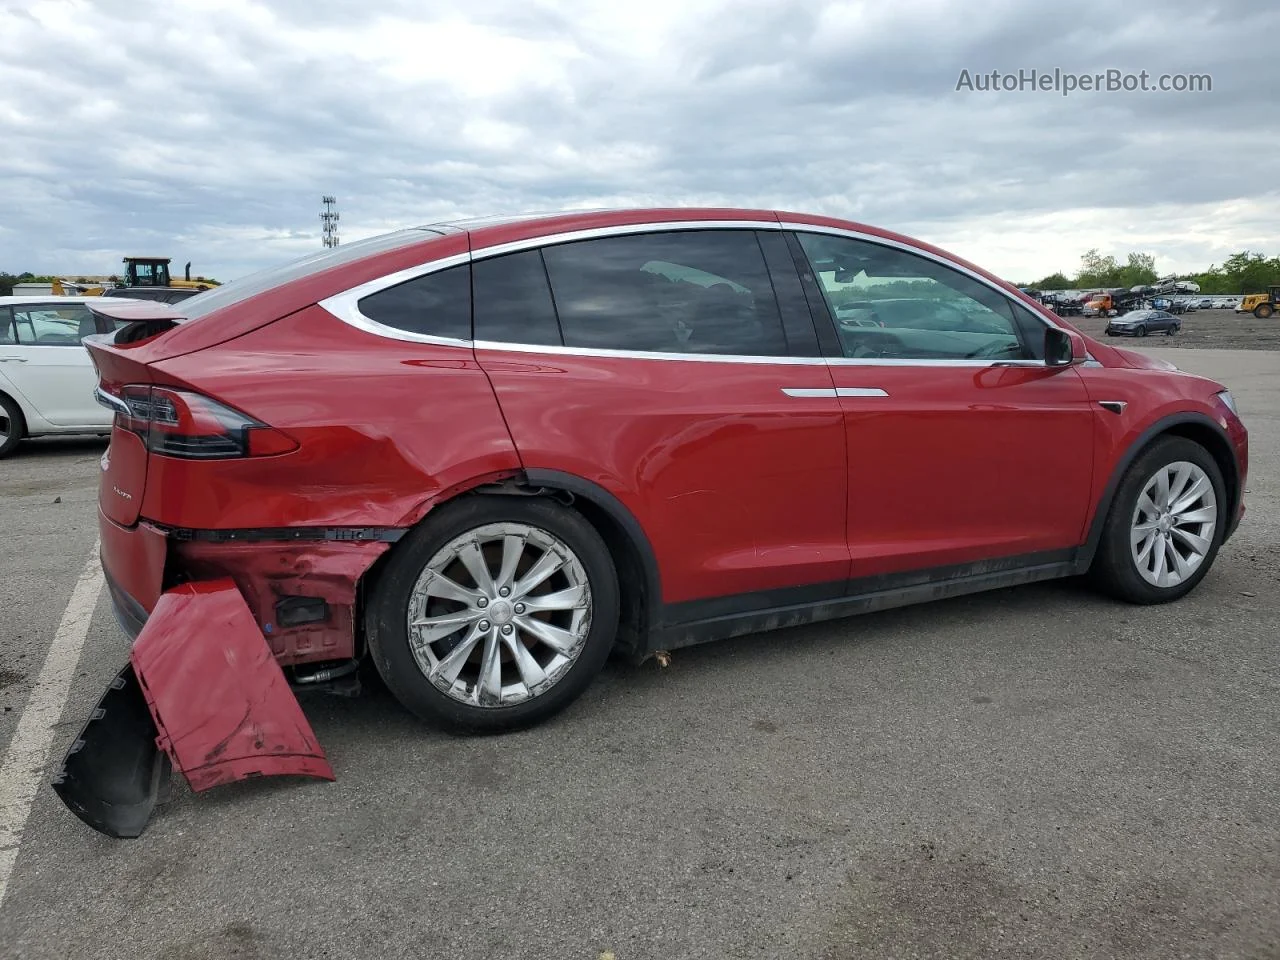 2020 Tesla Model X  Red vin: 5YJXCBE27LF218065